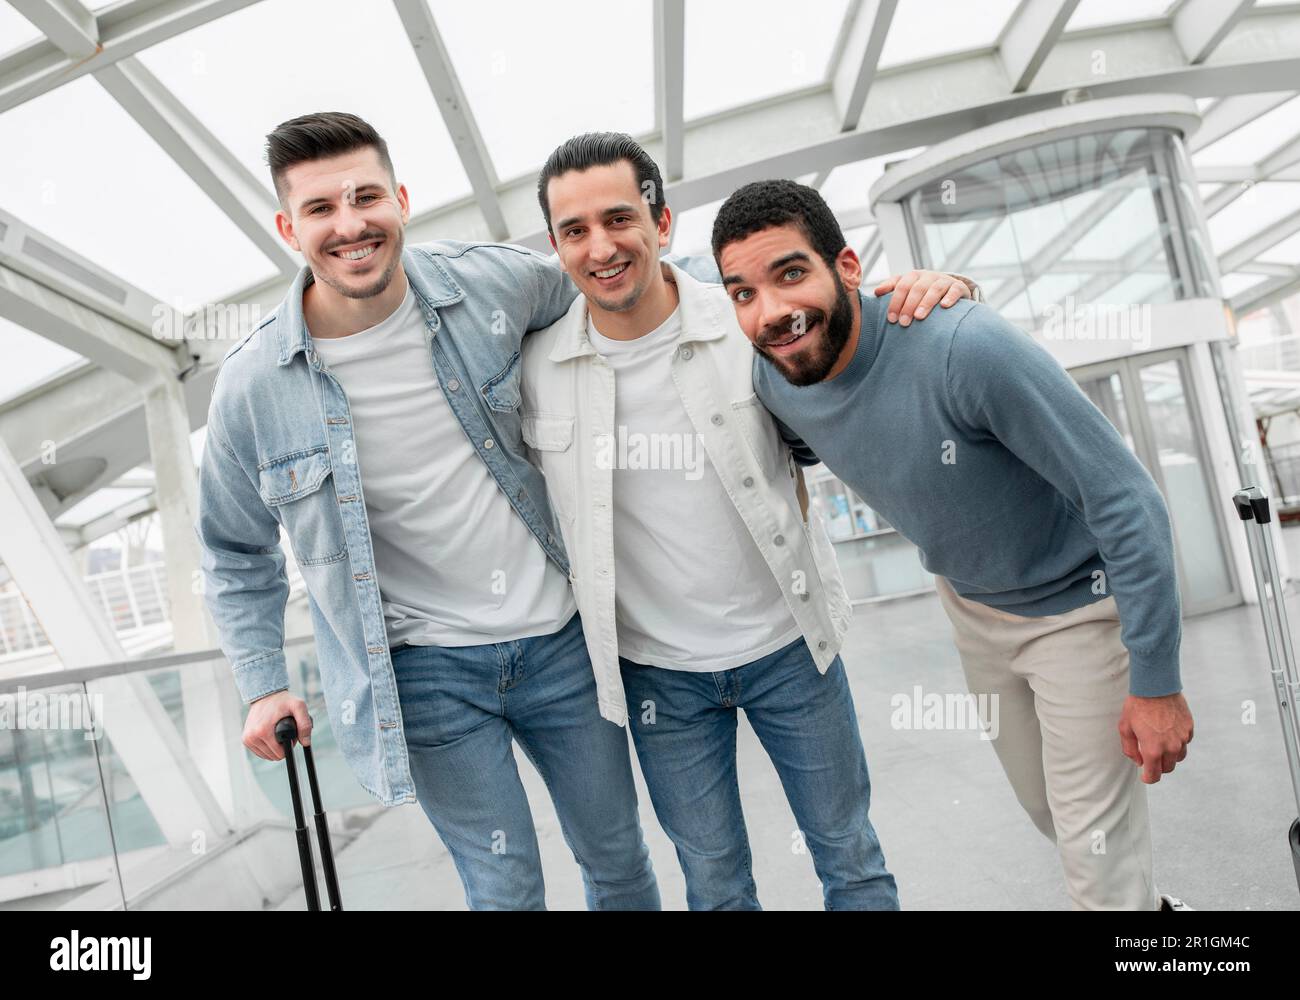 Touristes hommes Trio embrassant posant avec des bagages dans l'aéroport moderne Banque D'Images